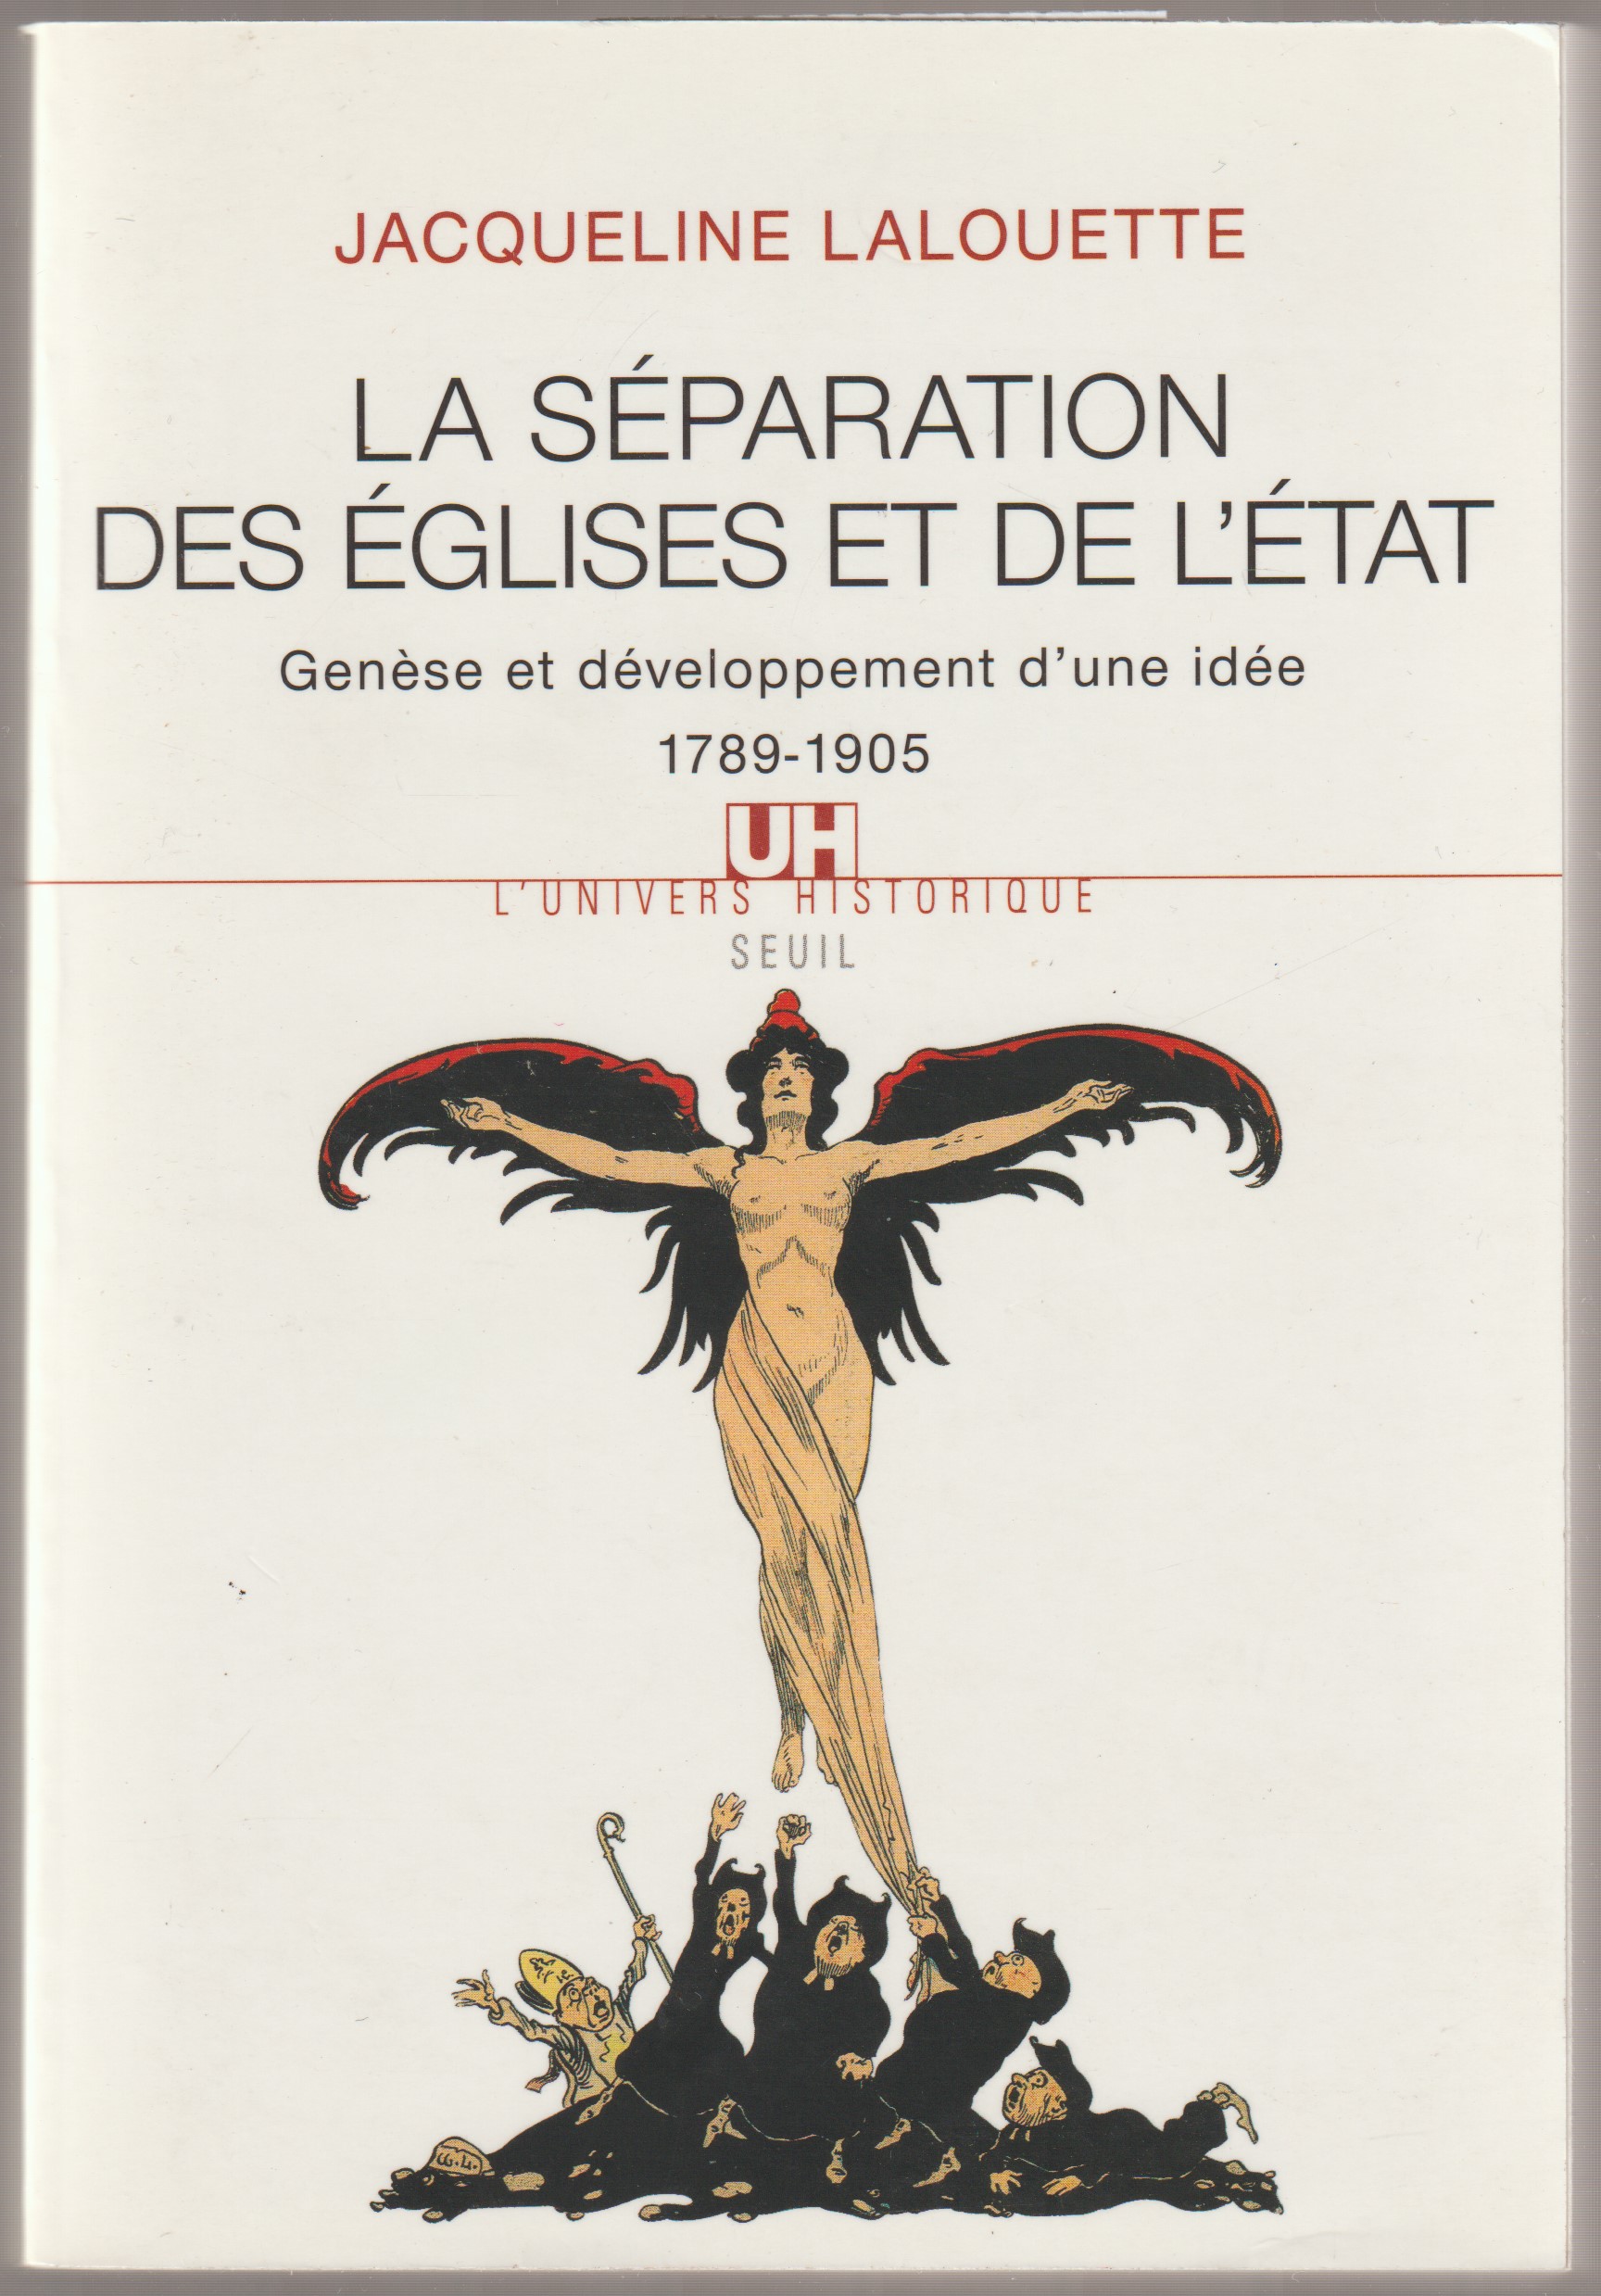 La separation des eglises et de l'etat : genese et developpement d'une idee 1789-1905